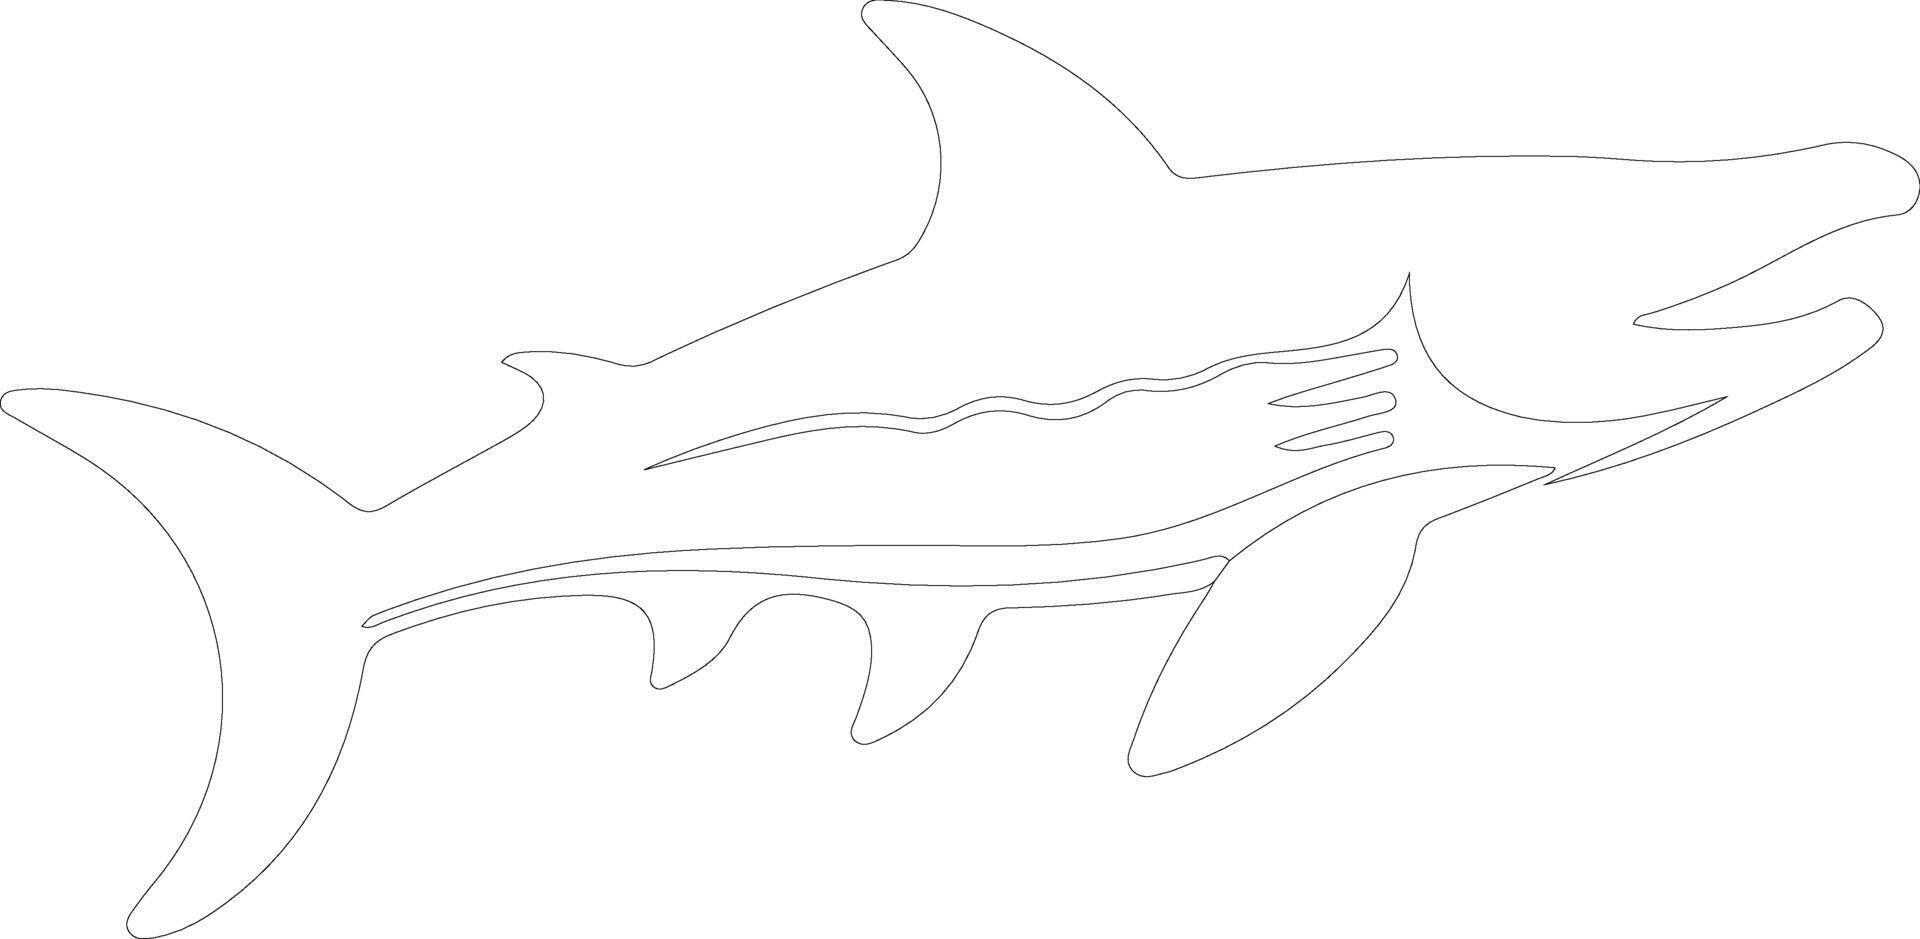 liopleurodon schema silhouette vettore